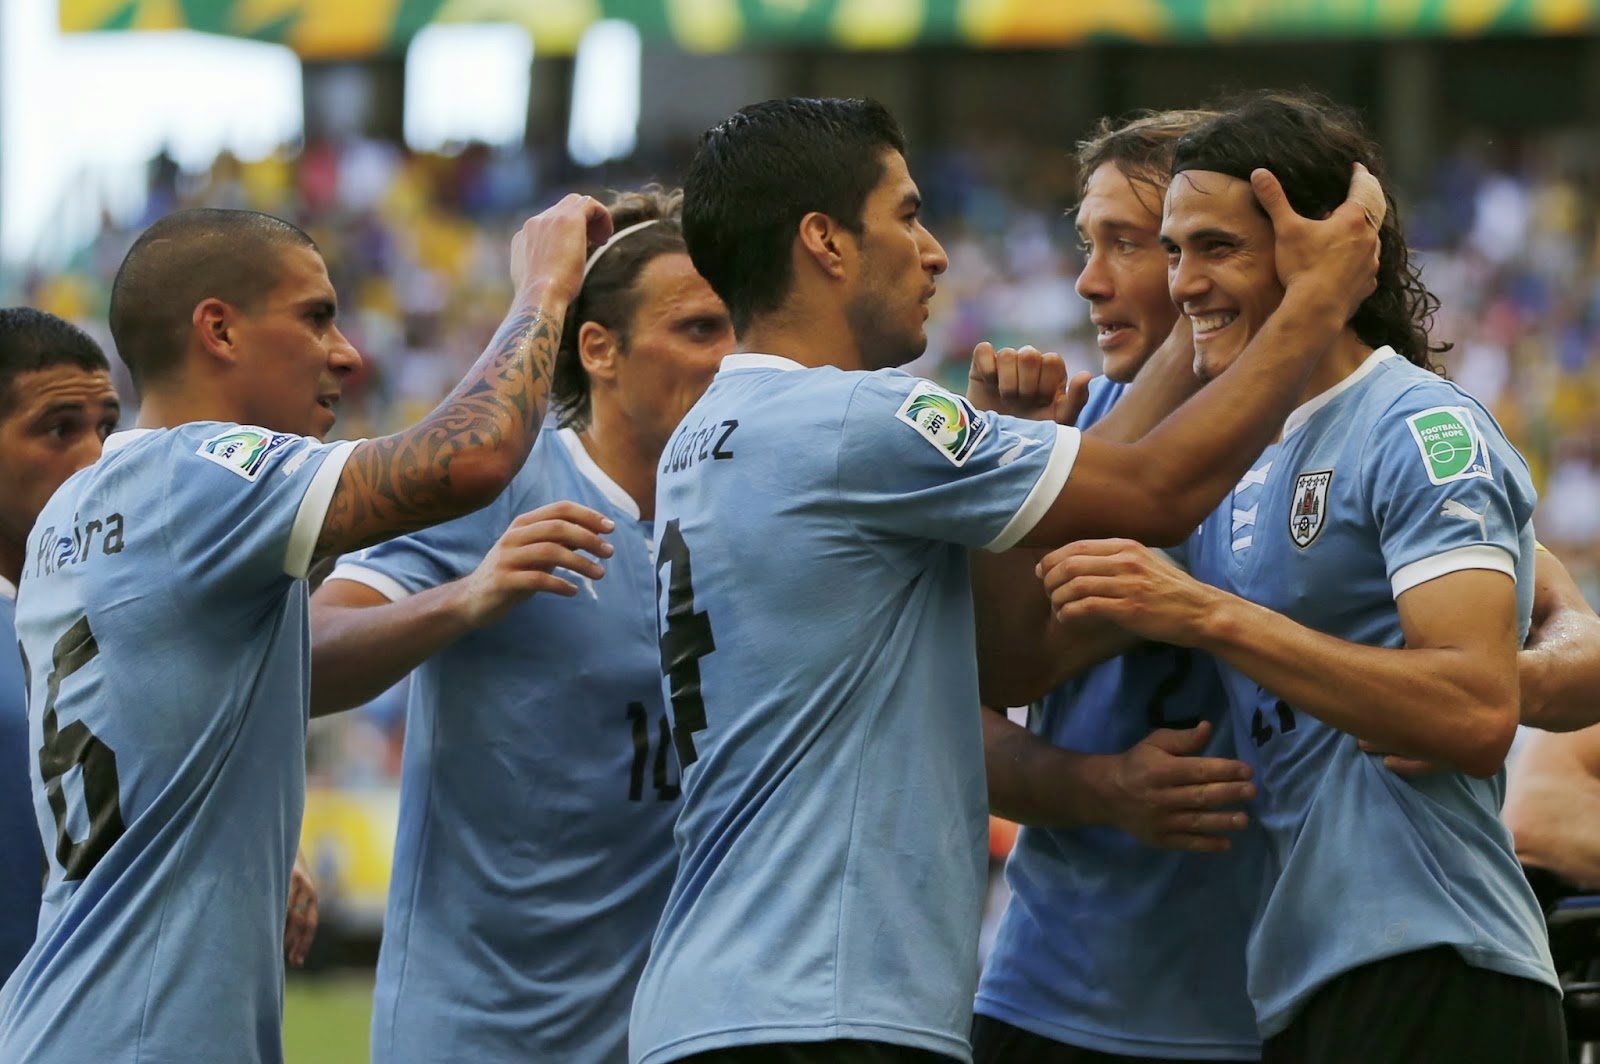 Luis Suarez Cavani estrellas Uruguay campeón Mundial Brasil 2014 Wold Cup ver fútbol gratis en vivo online